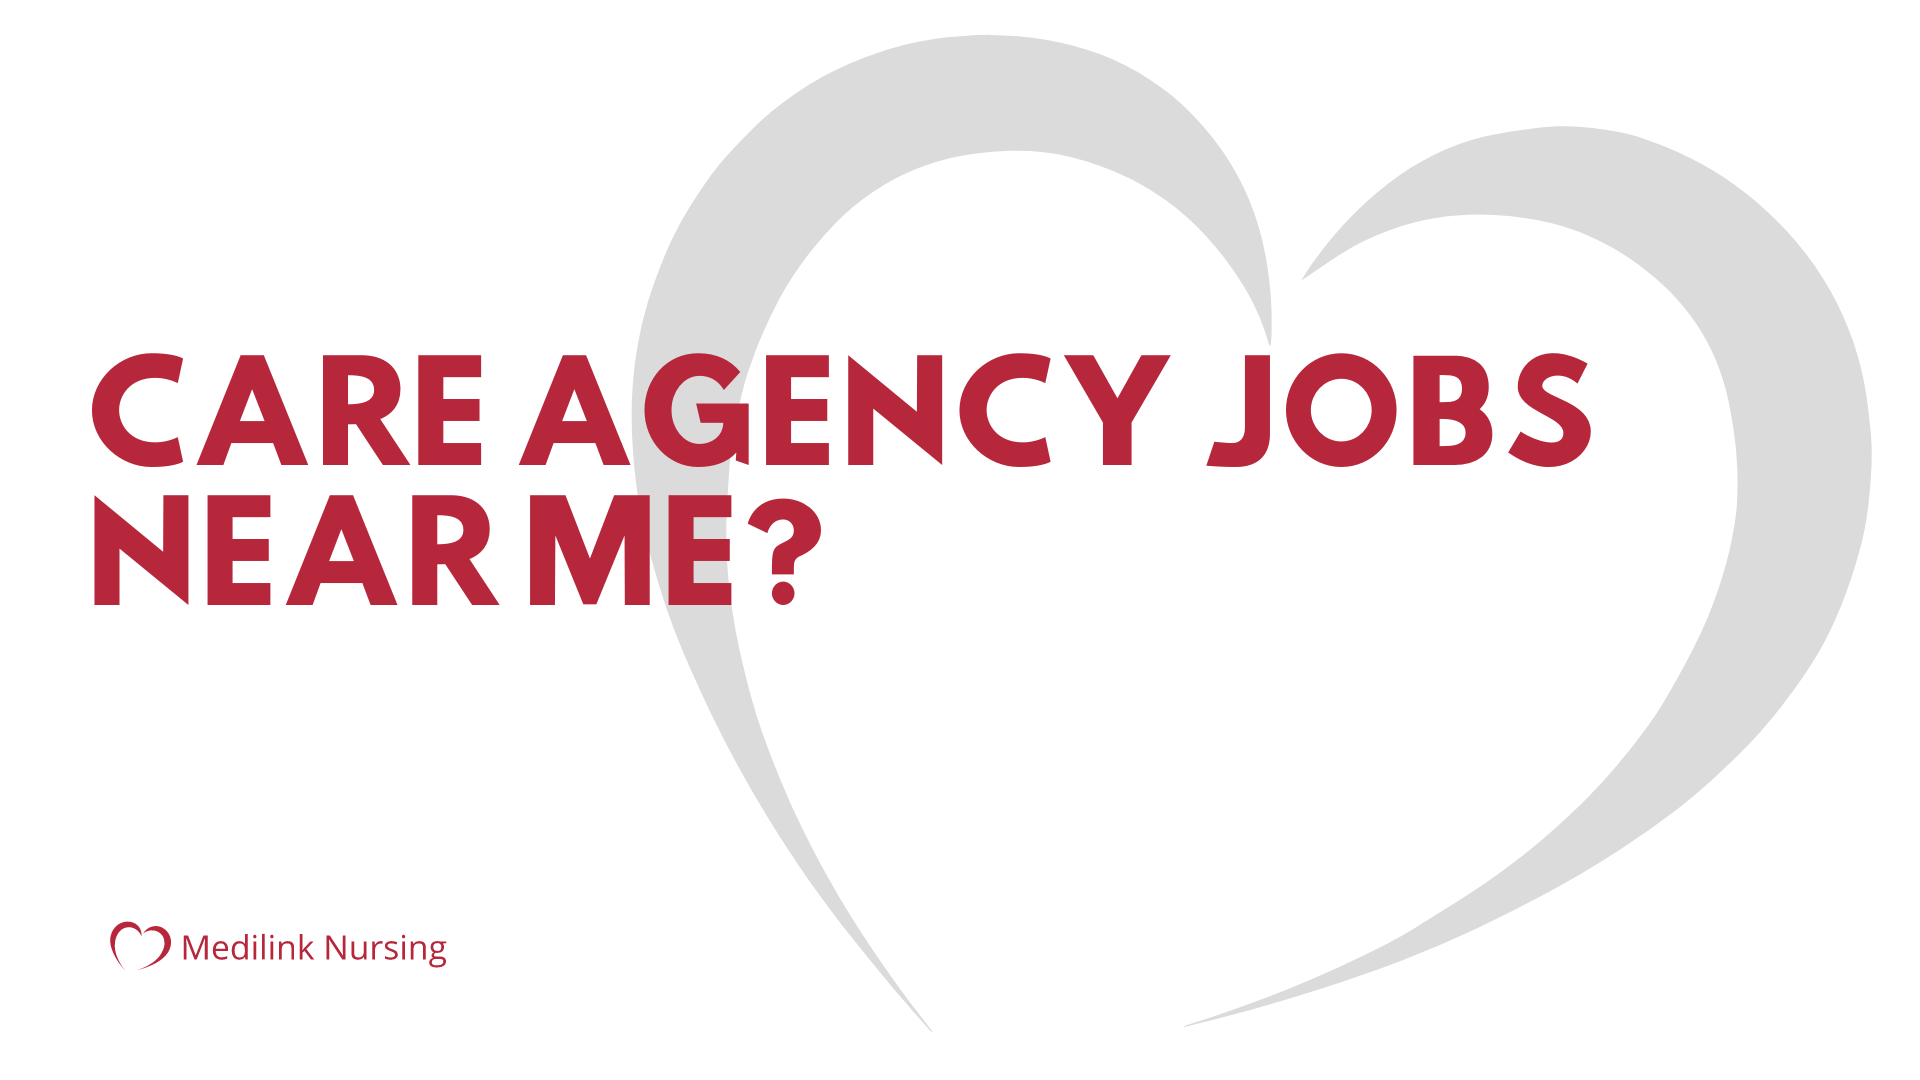 Care agency jobs near me